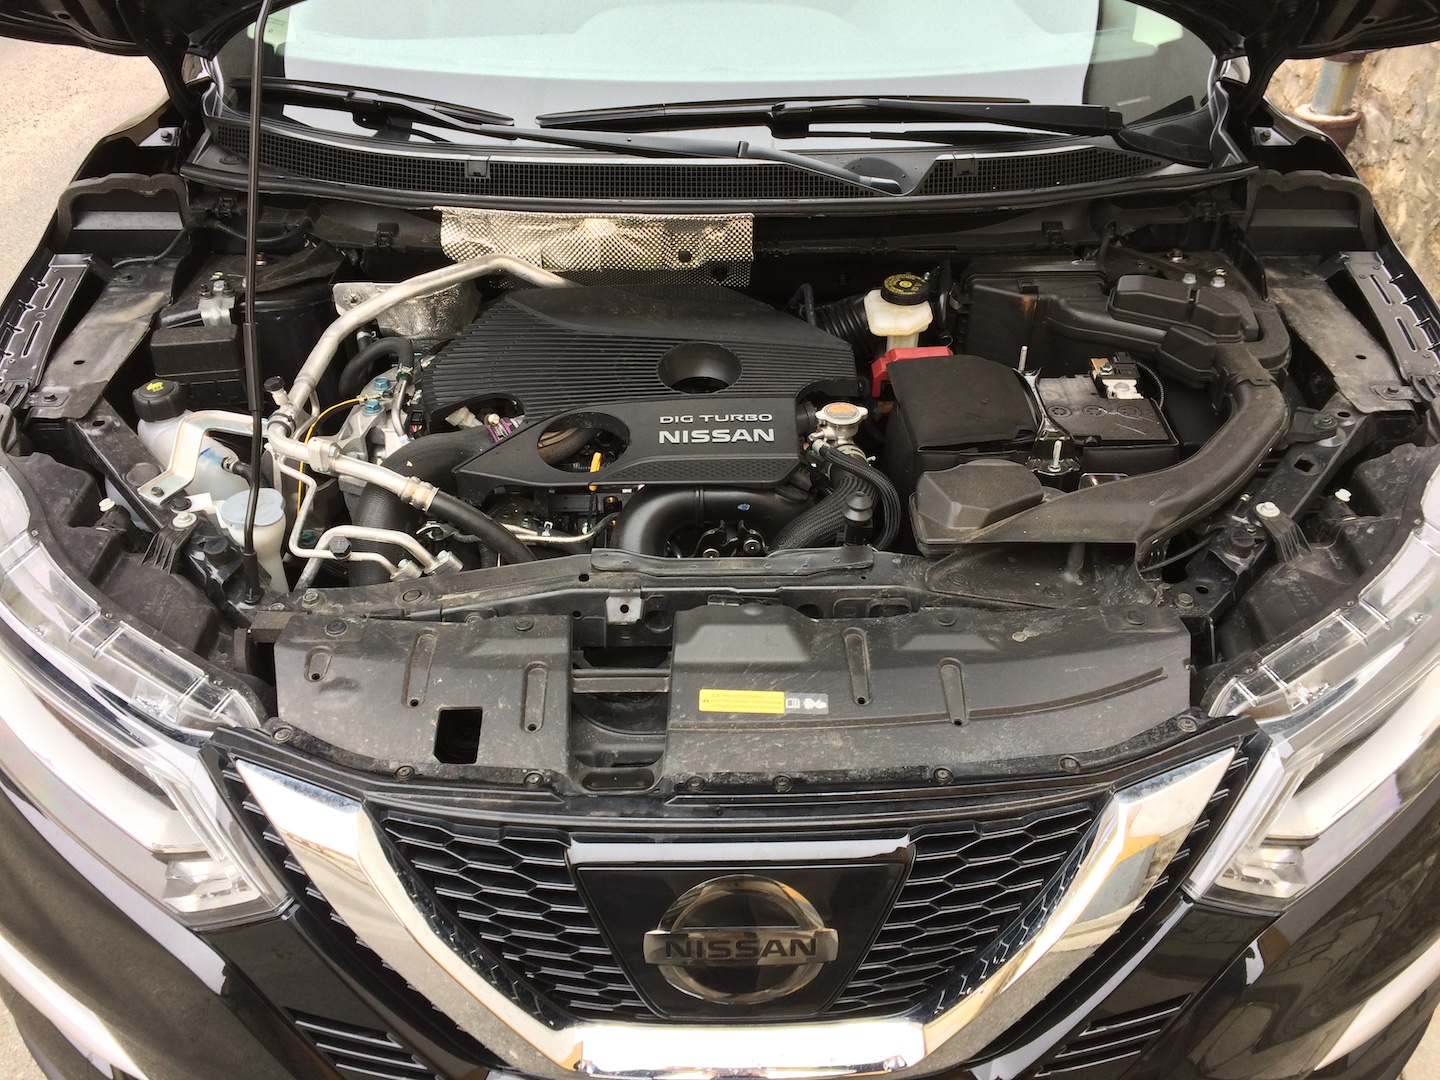 TEST Nissan Qashqai 1,6 DIGT 120 kW skutečná spotřeba